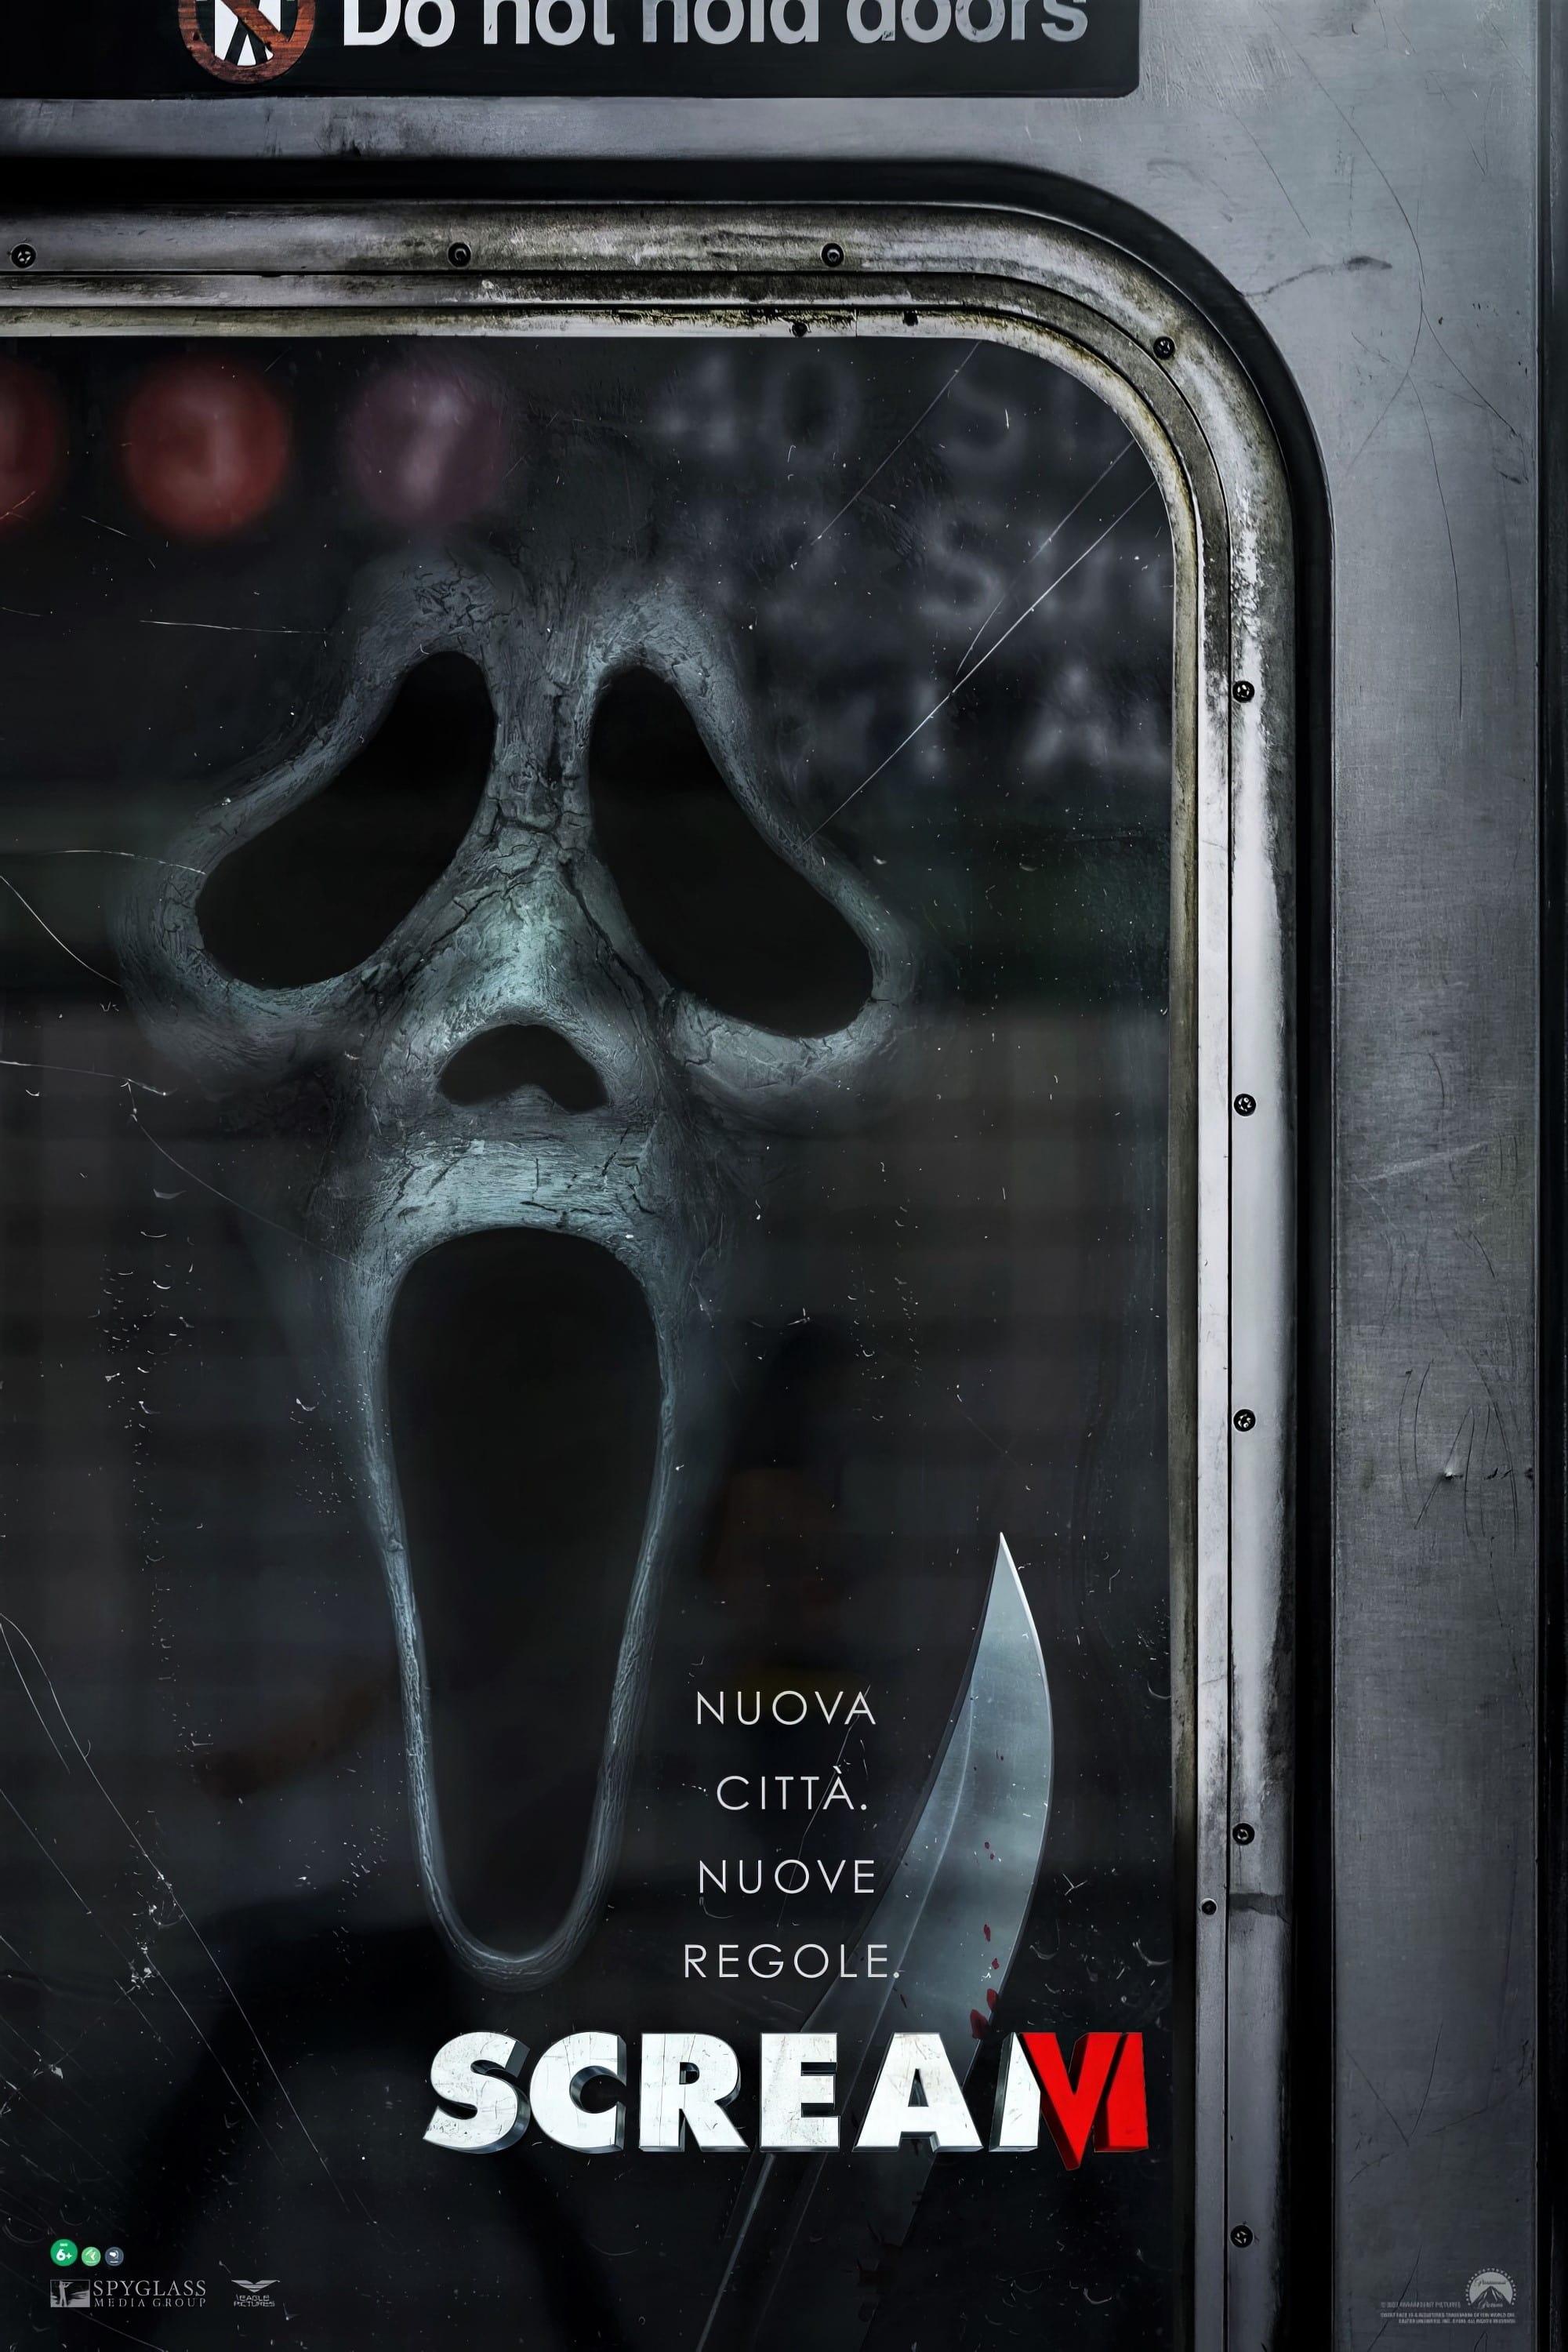 Scream VI film